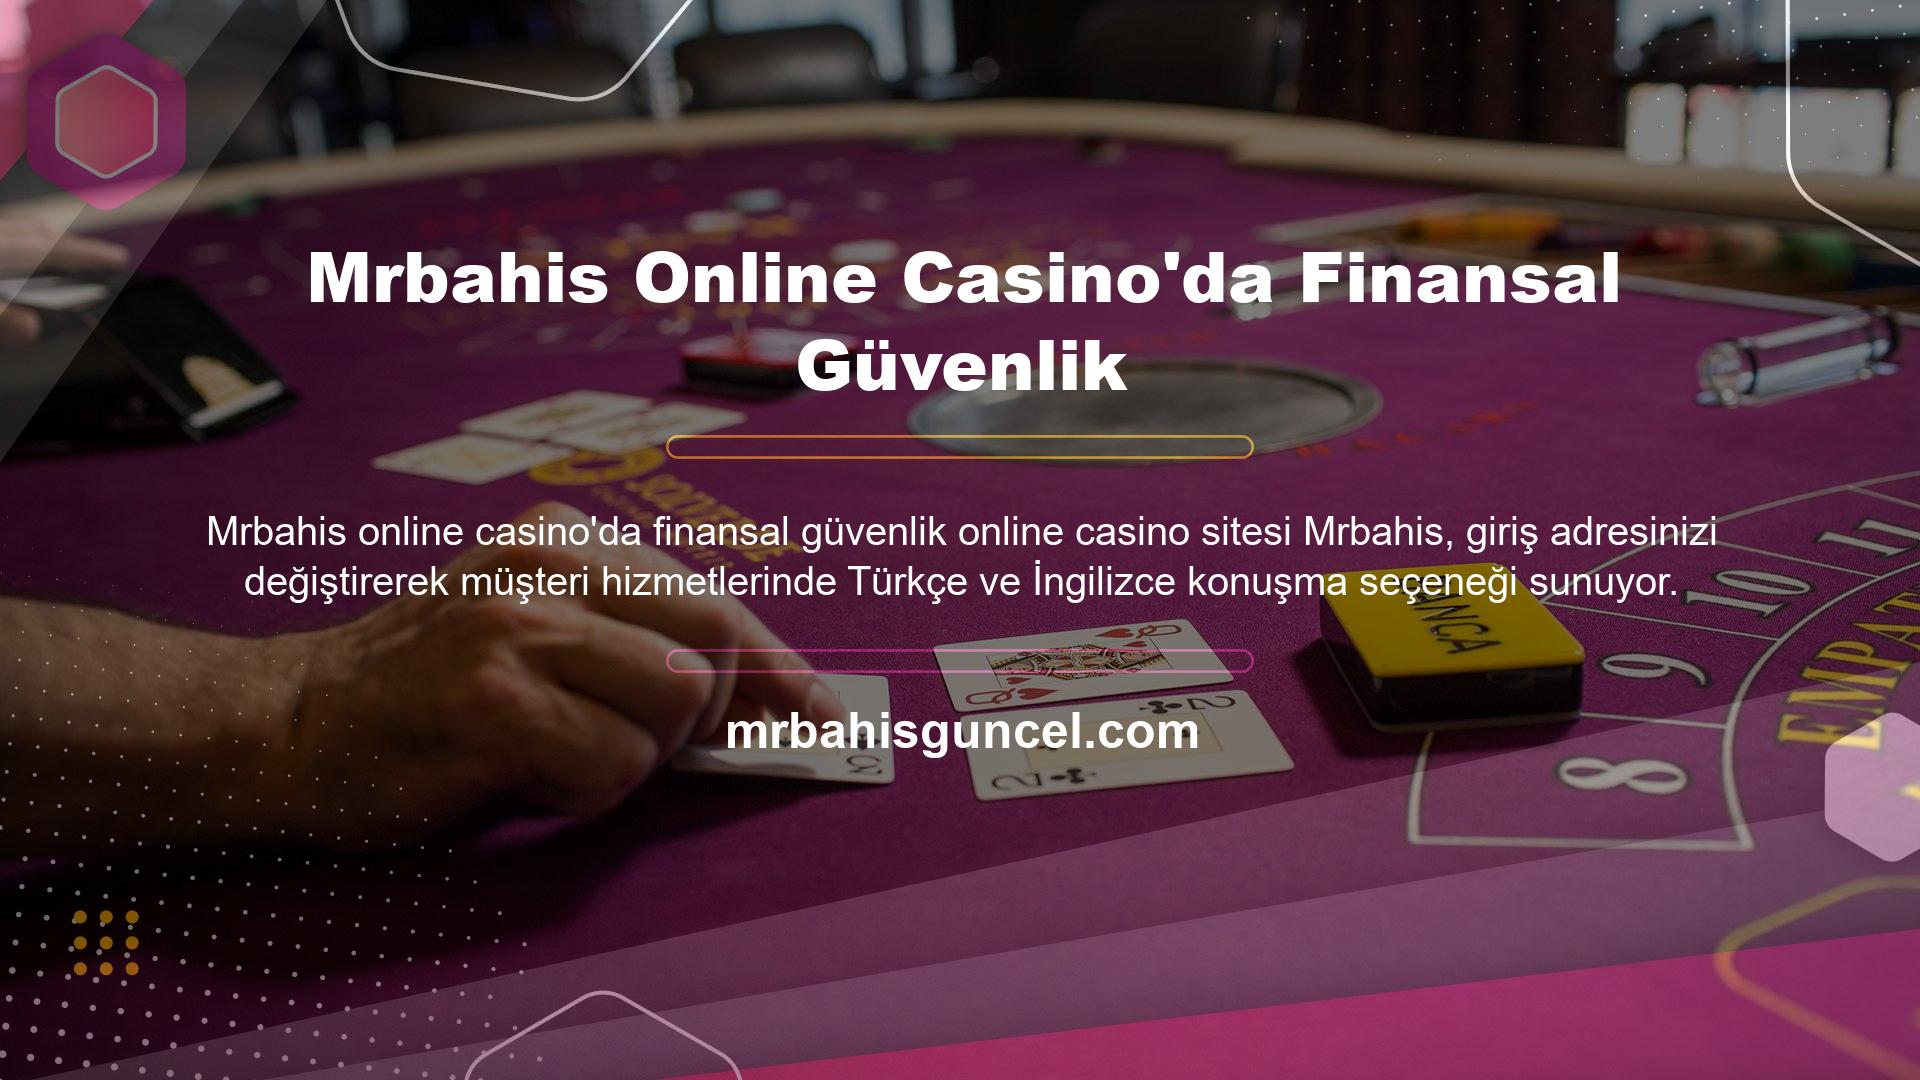 Mrbahis online casino finansal güvenliği, sanal casino, canlı casino, canlı bahis şirketi yatırım ve para çekme teknolojisi hakkında daha fazla bilgi için lütfen canlı destek ile iletişime geçin